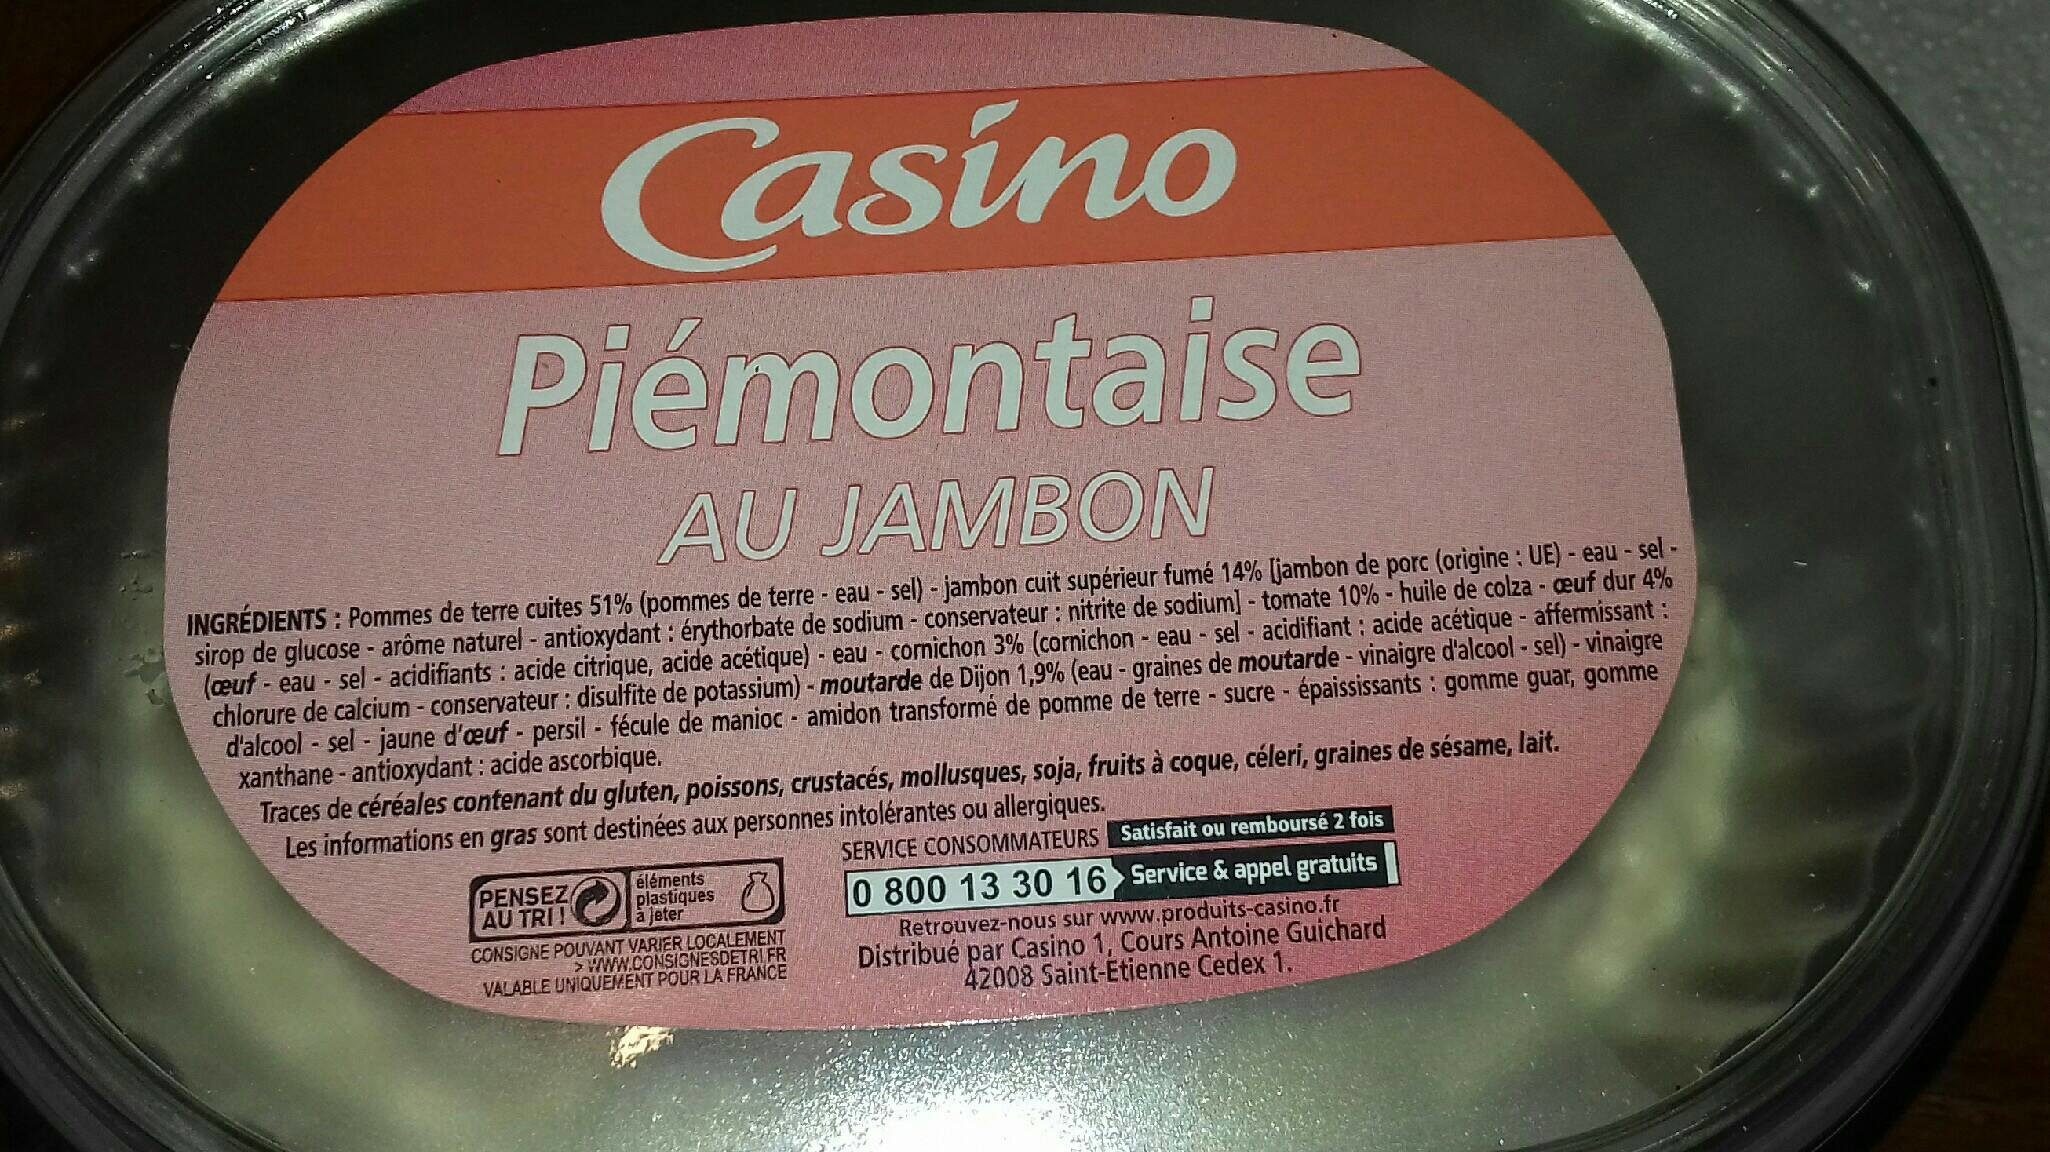 Piémontaise au jambon - Product - fr